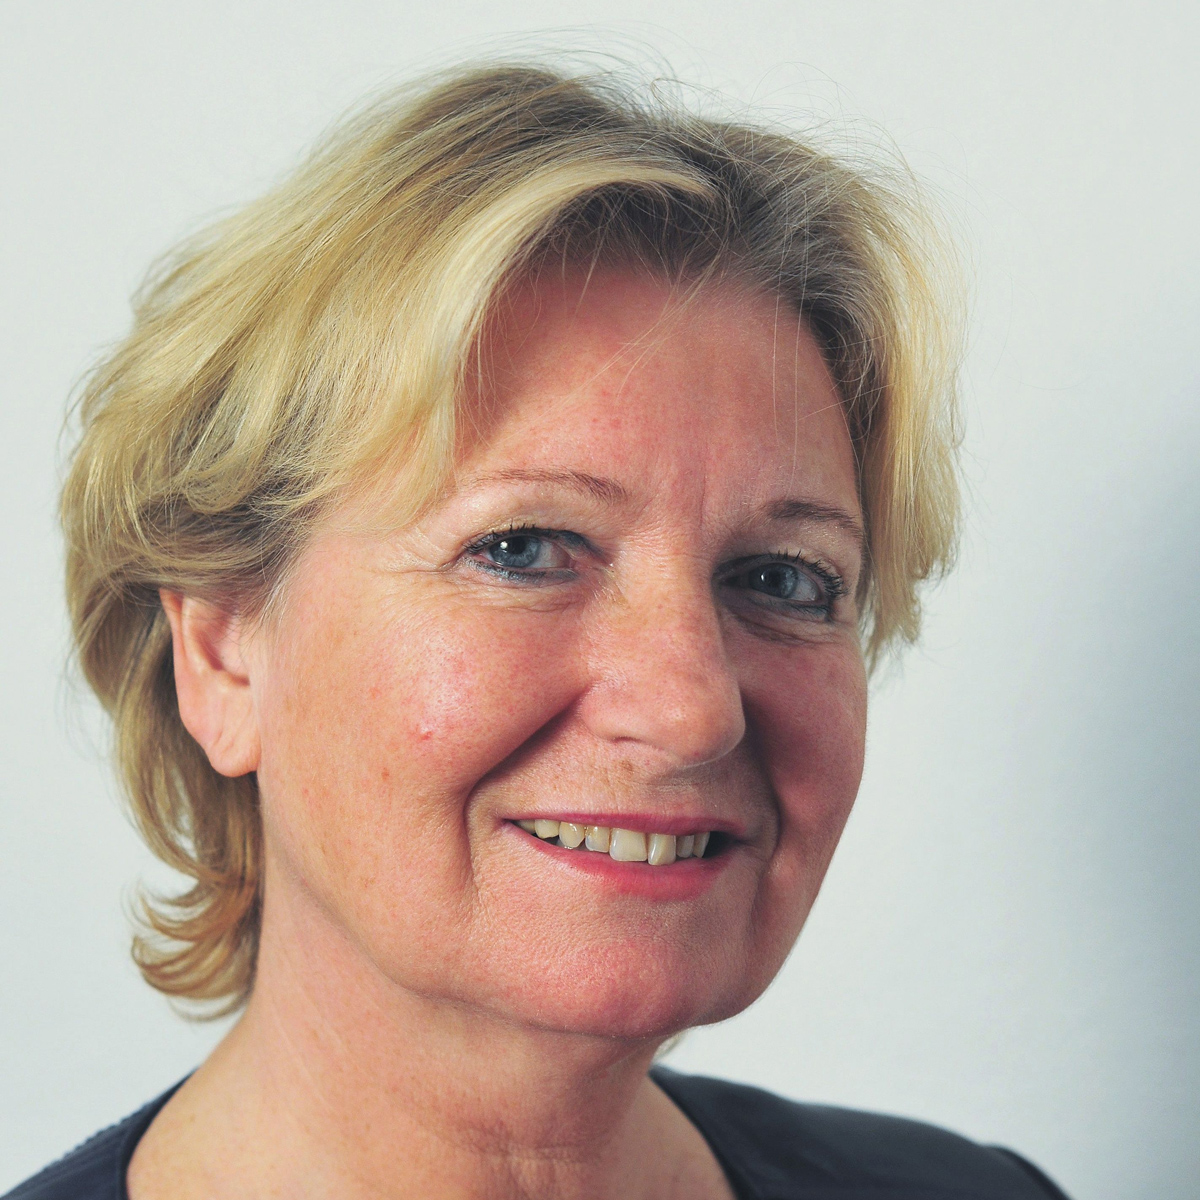 Prof. dr. Lisette van Gemert-Pijnen